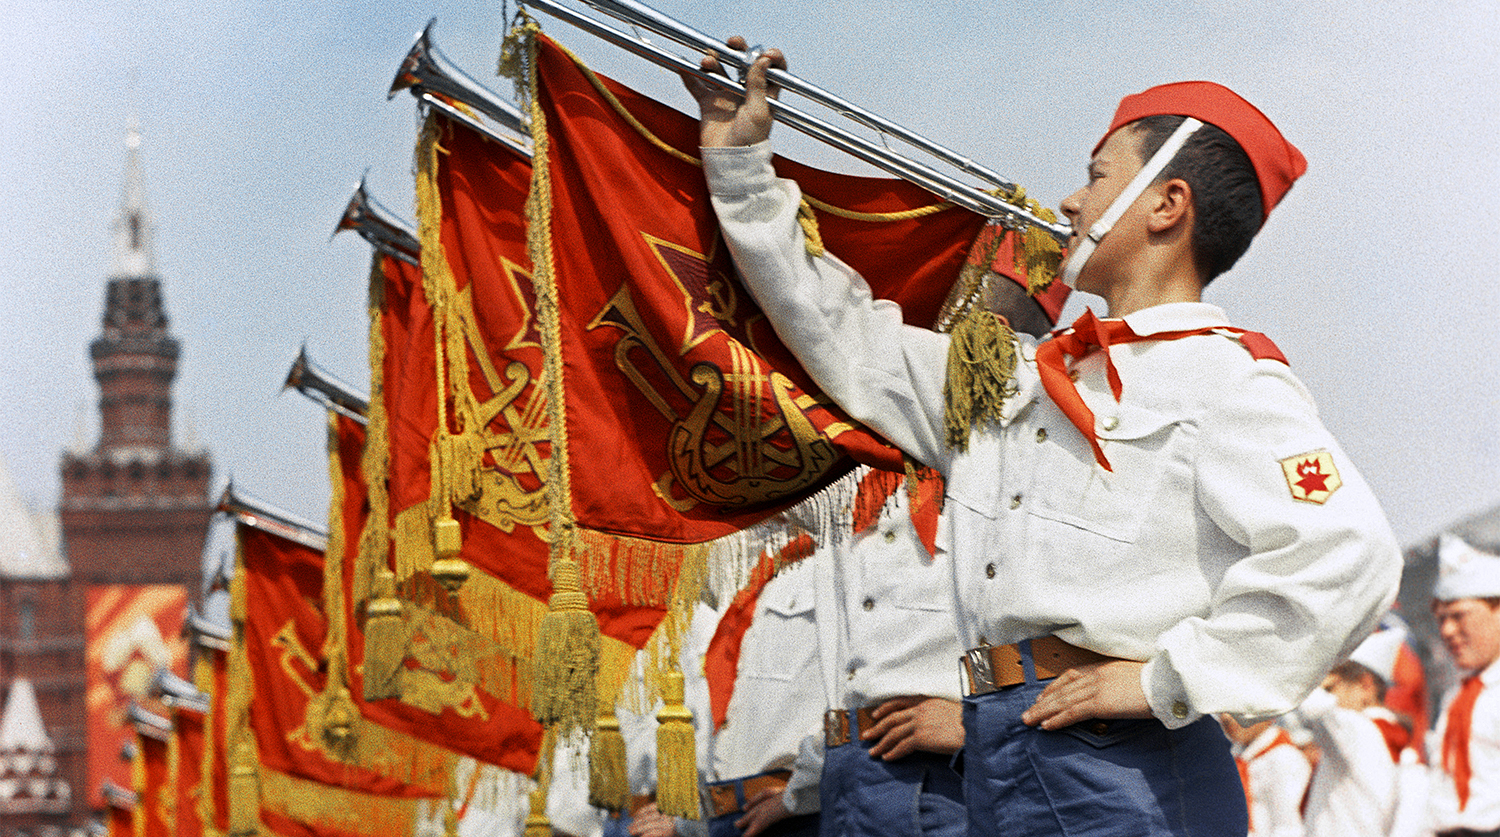 

Участники парада на Красной площади в Москве, посвященного празднованию 50-летия Советской власти и...

